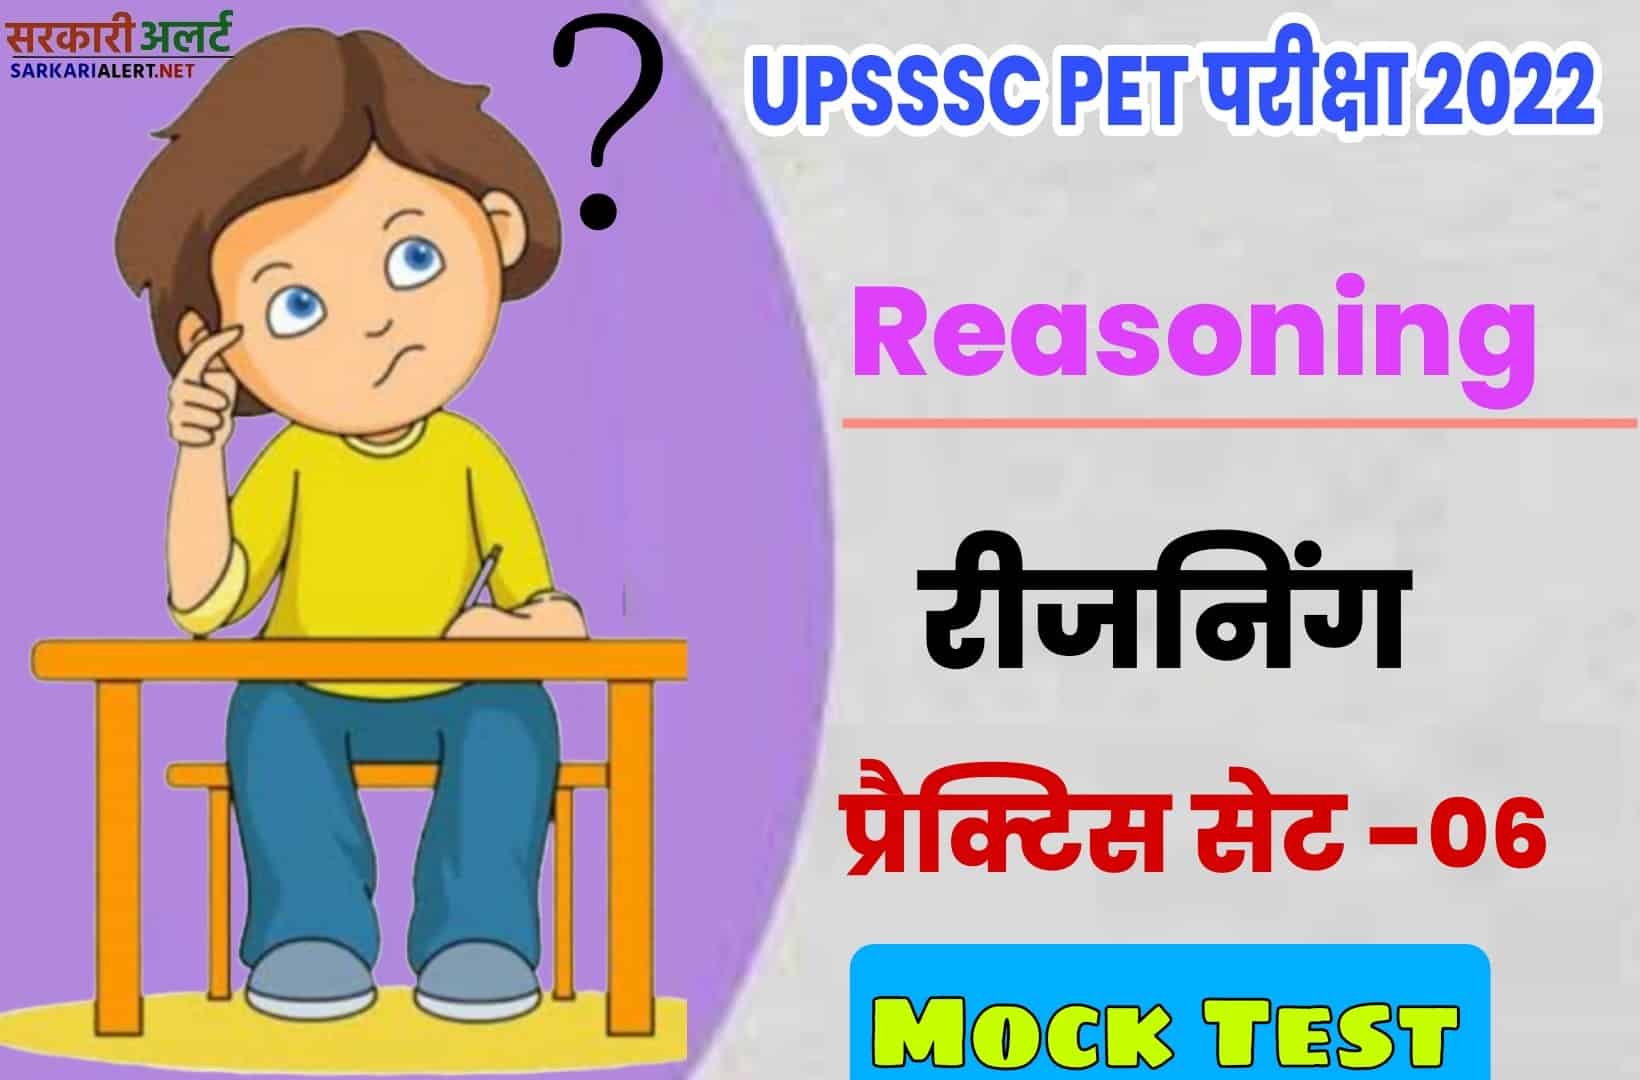 UPSSSC PET Reasoning Practice Set 06 | परीक्षा से पहले एक नजर जरूर पढ़ें मुख्य प्रश्नों संग्रह